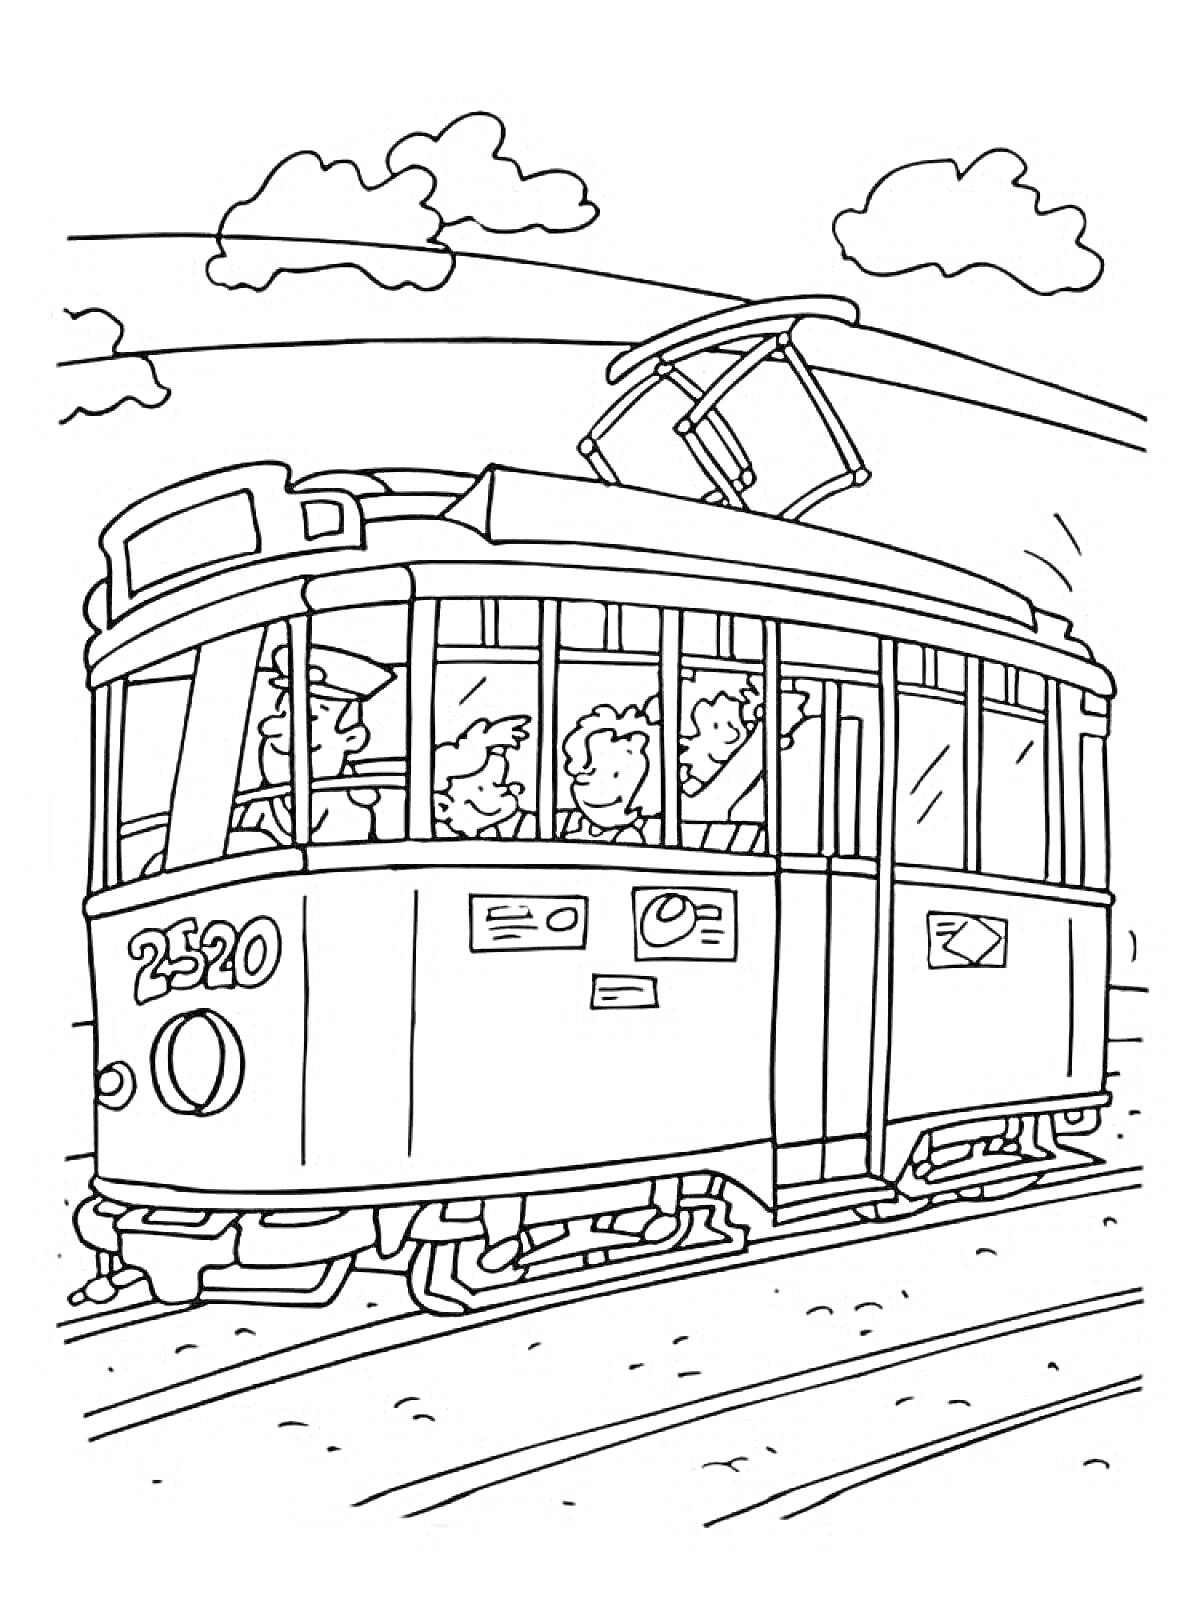 Раскраска Трамвай с пассажирами на рельсах с водителем, горы и облака на заднем плане